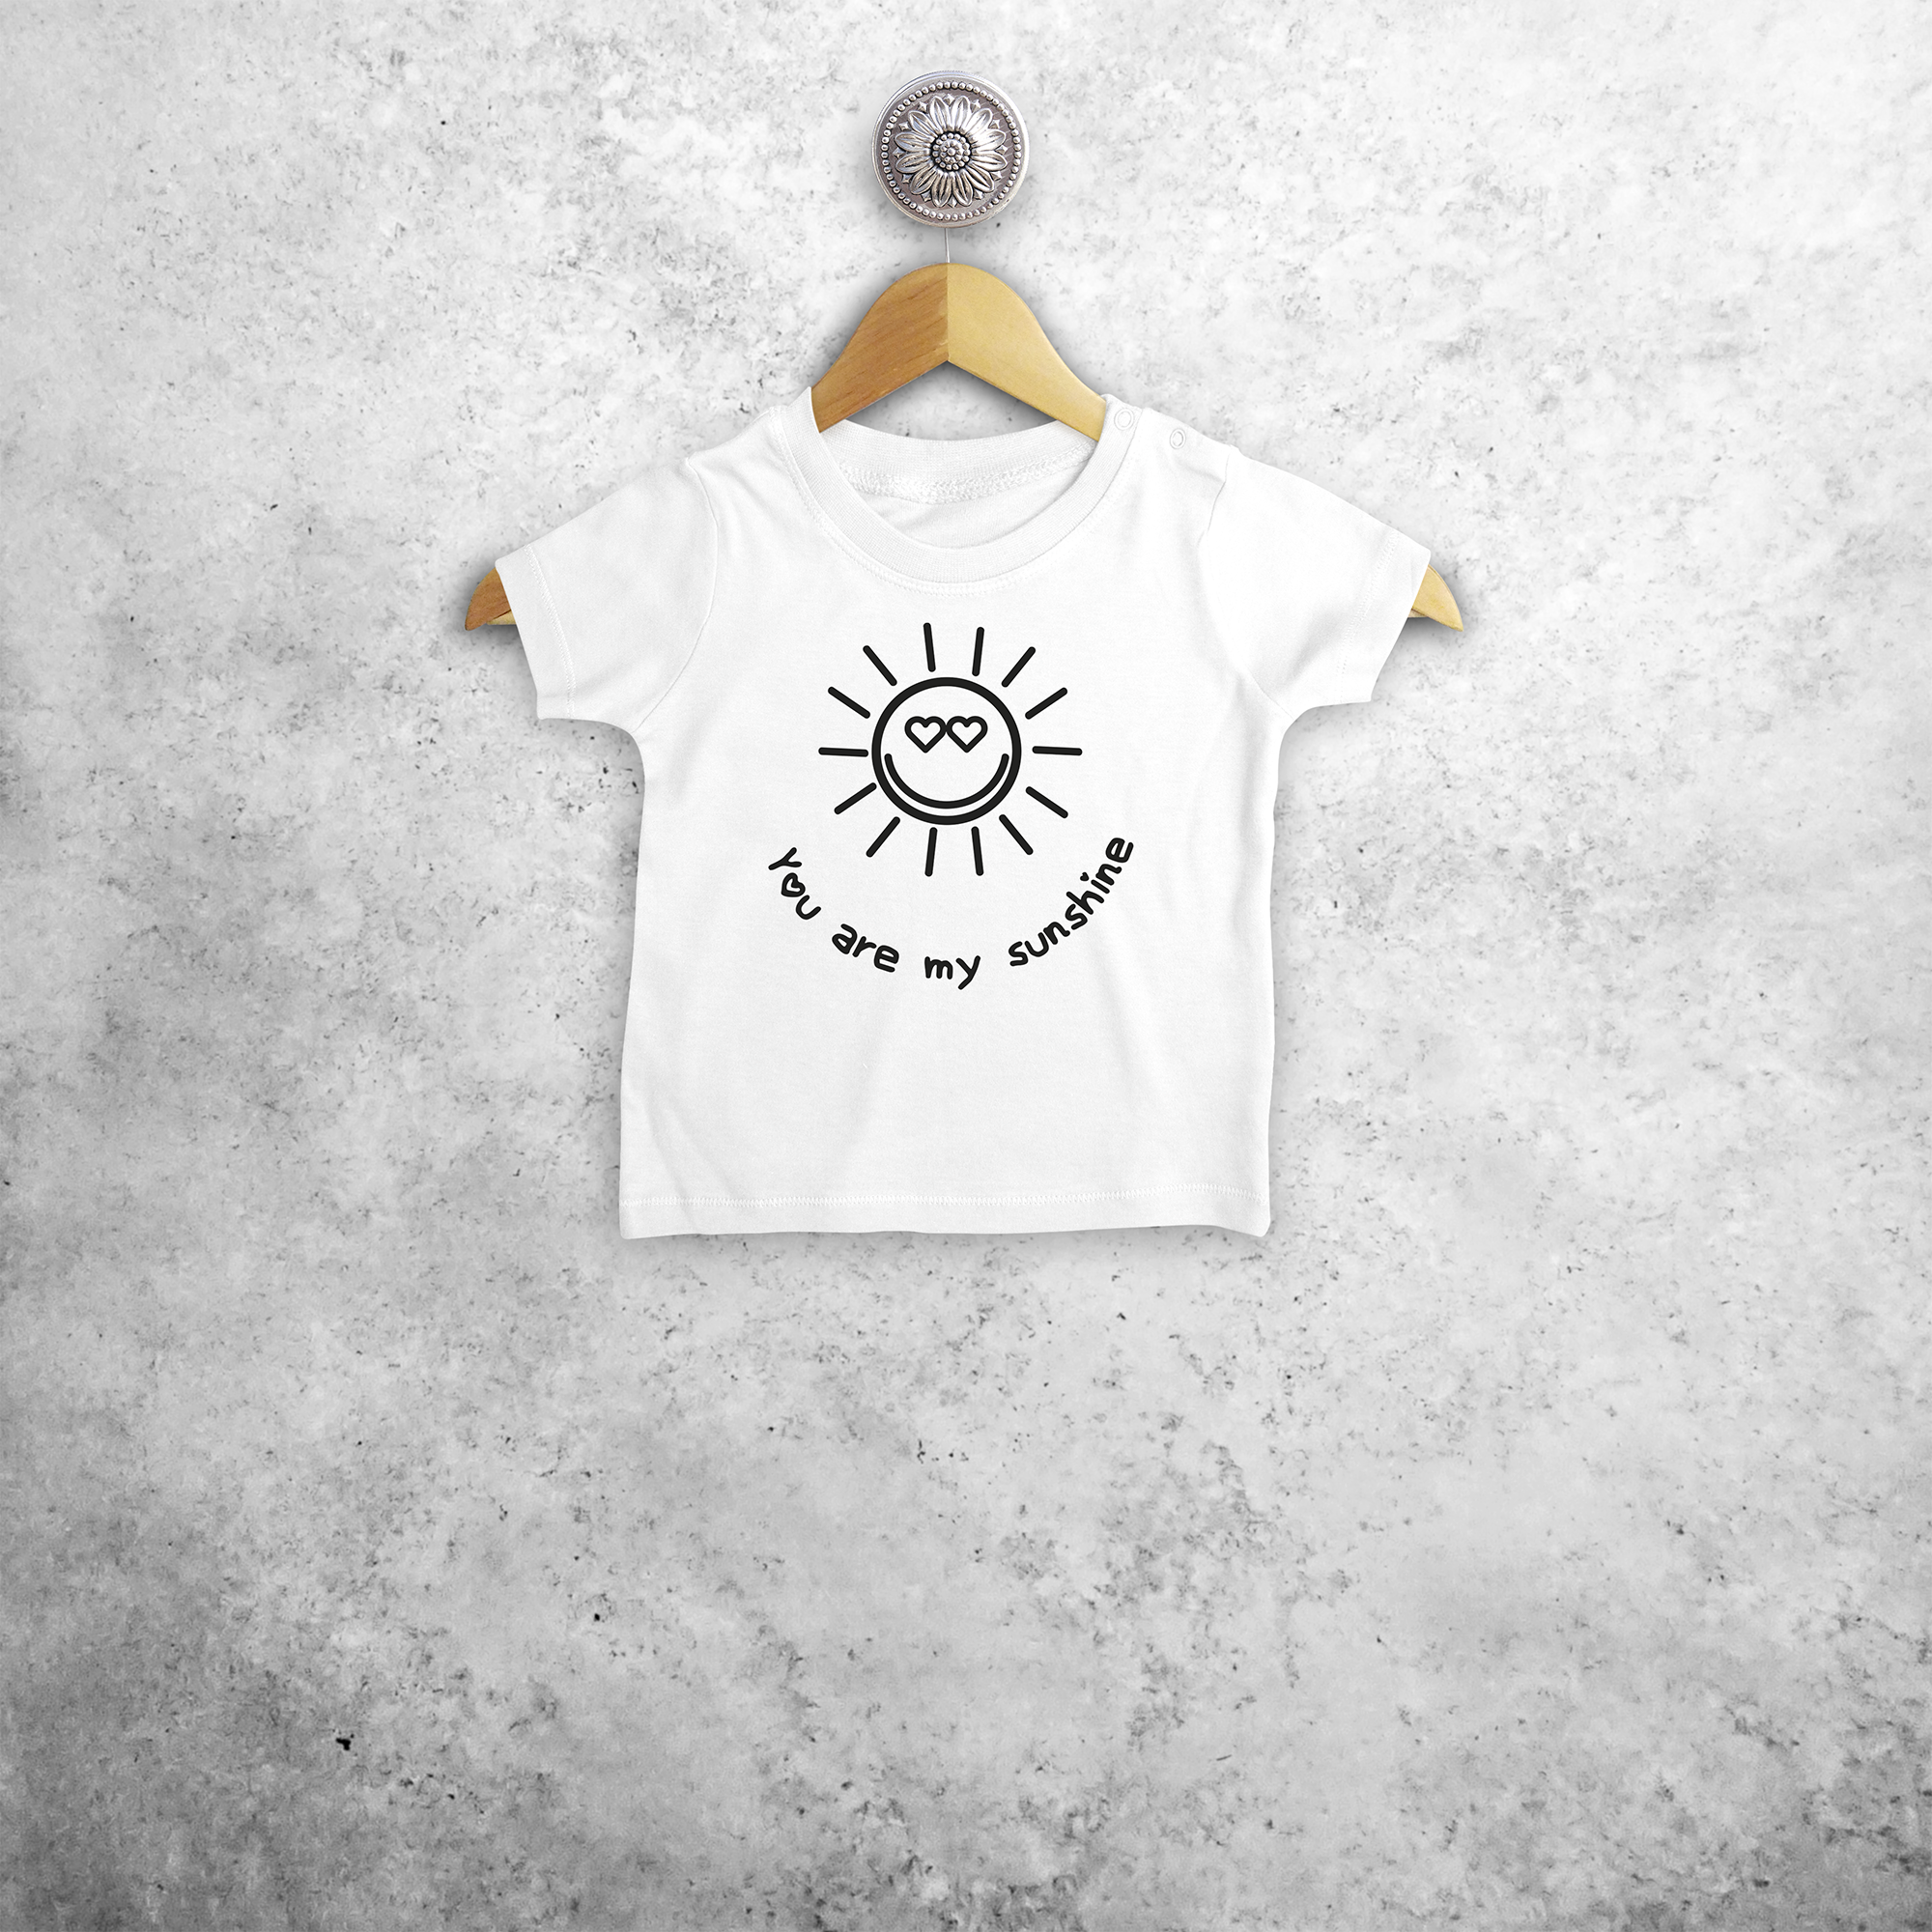 'You are my sunshine' baby shortsleeve shirt